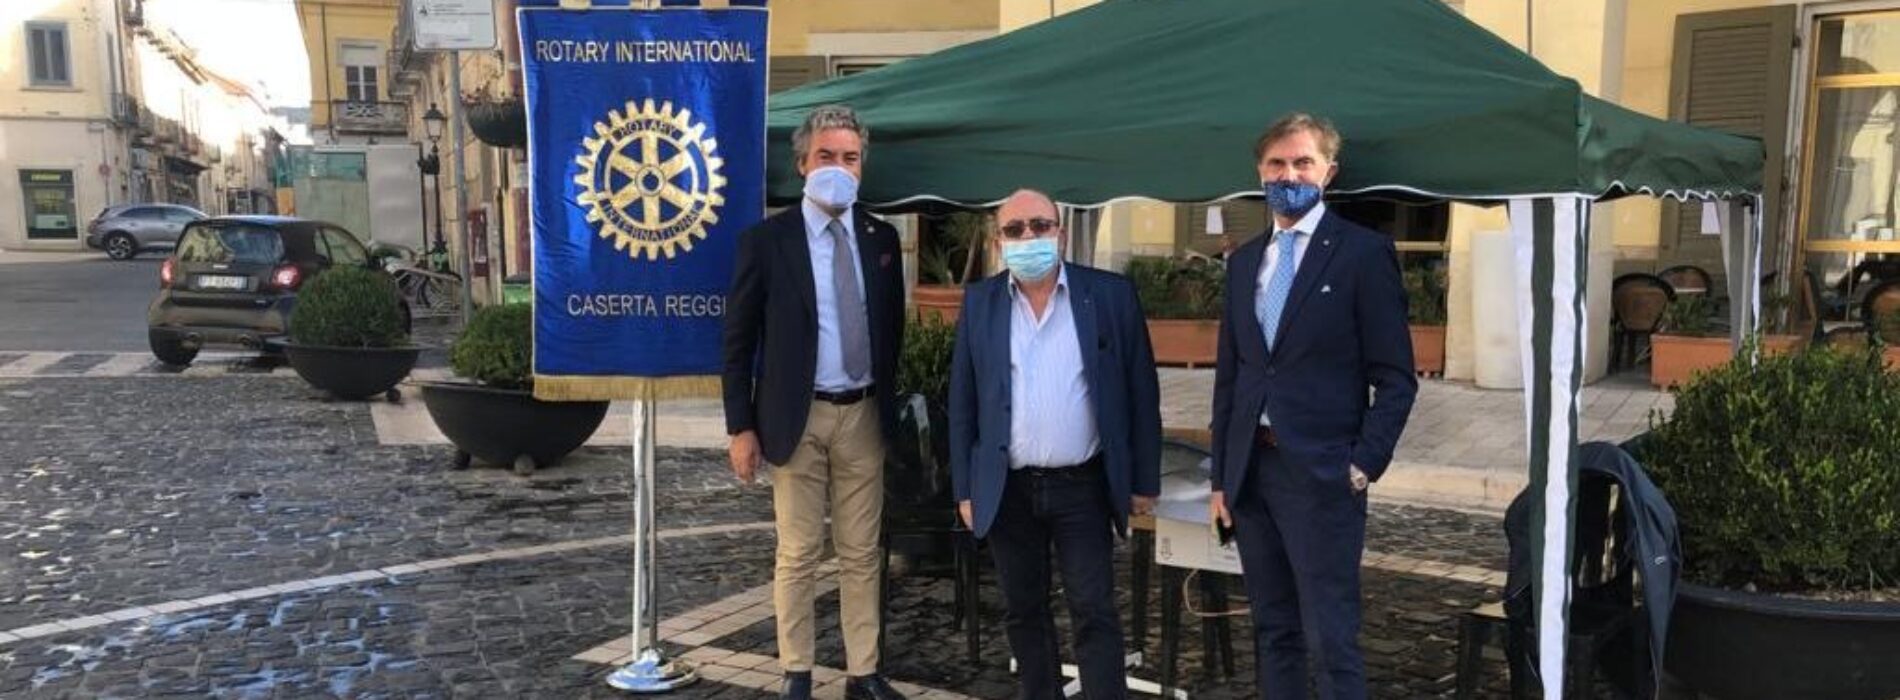 Il Rotary in piazza, impegno anti-covid con mascherine gratis